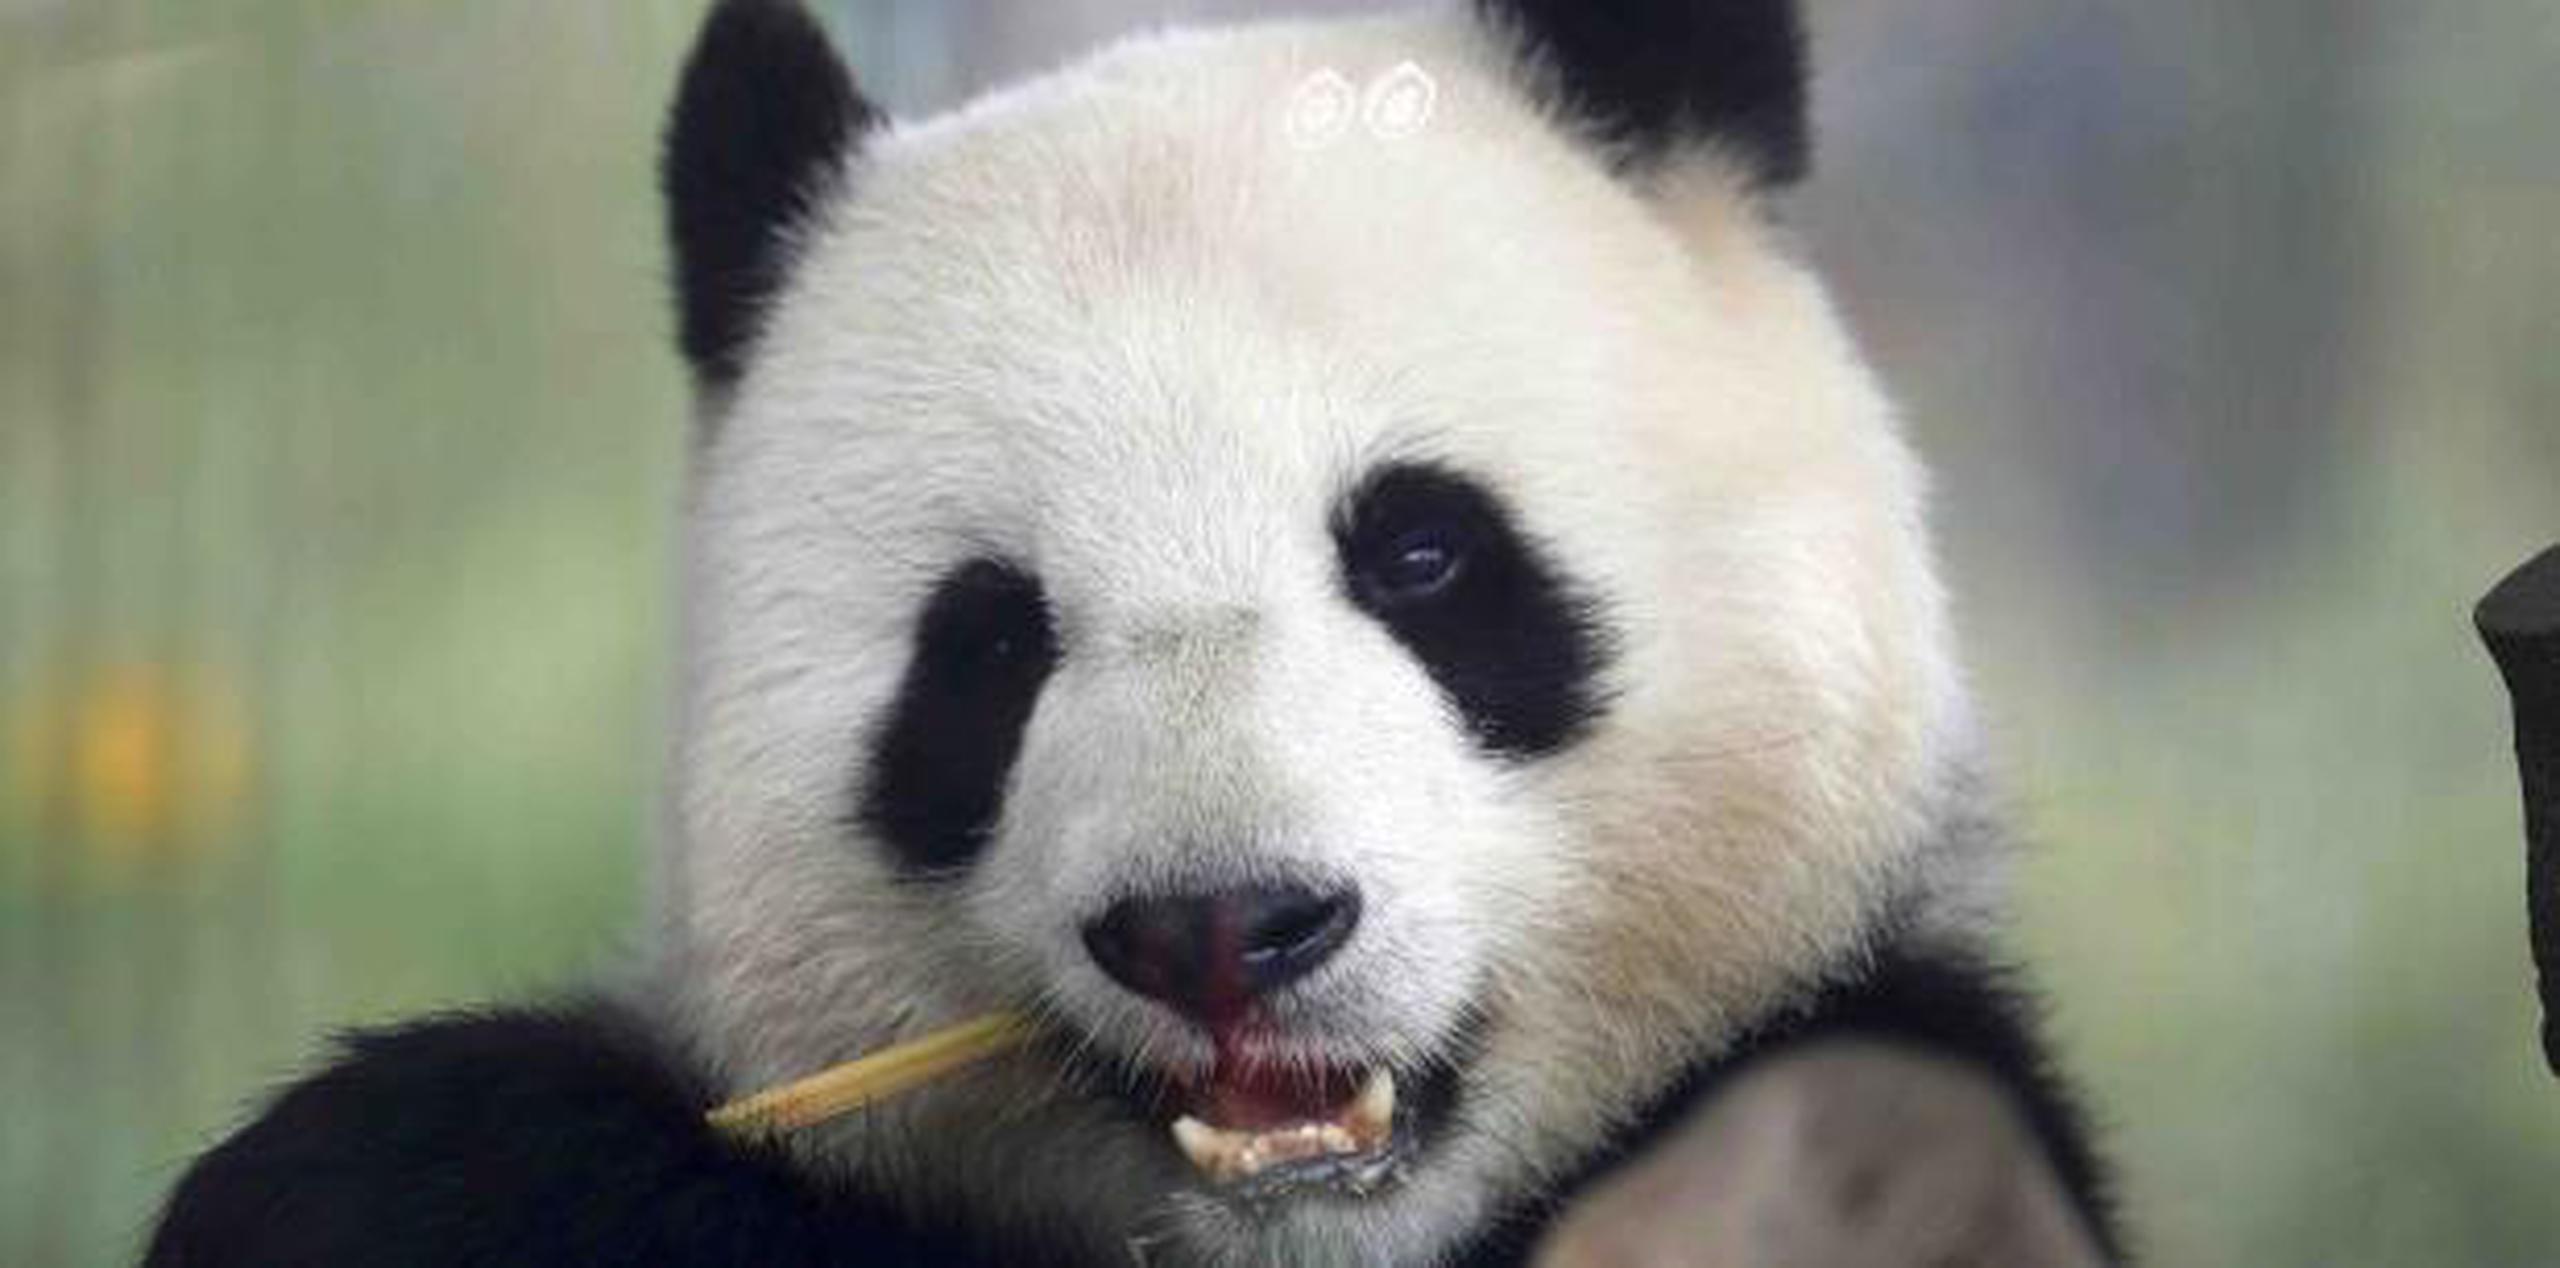 La panda Meng Meng se apareó por primera vez con el oso Jiao Qing en abril y también fue inseminada artificialmente para aumentar las probabilidades de un embarazo.  (AP)